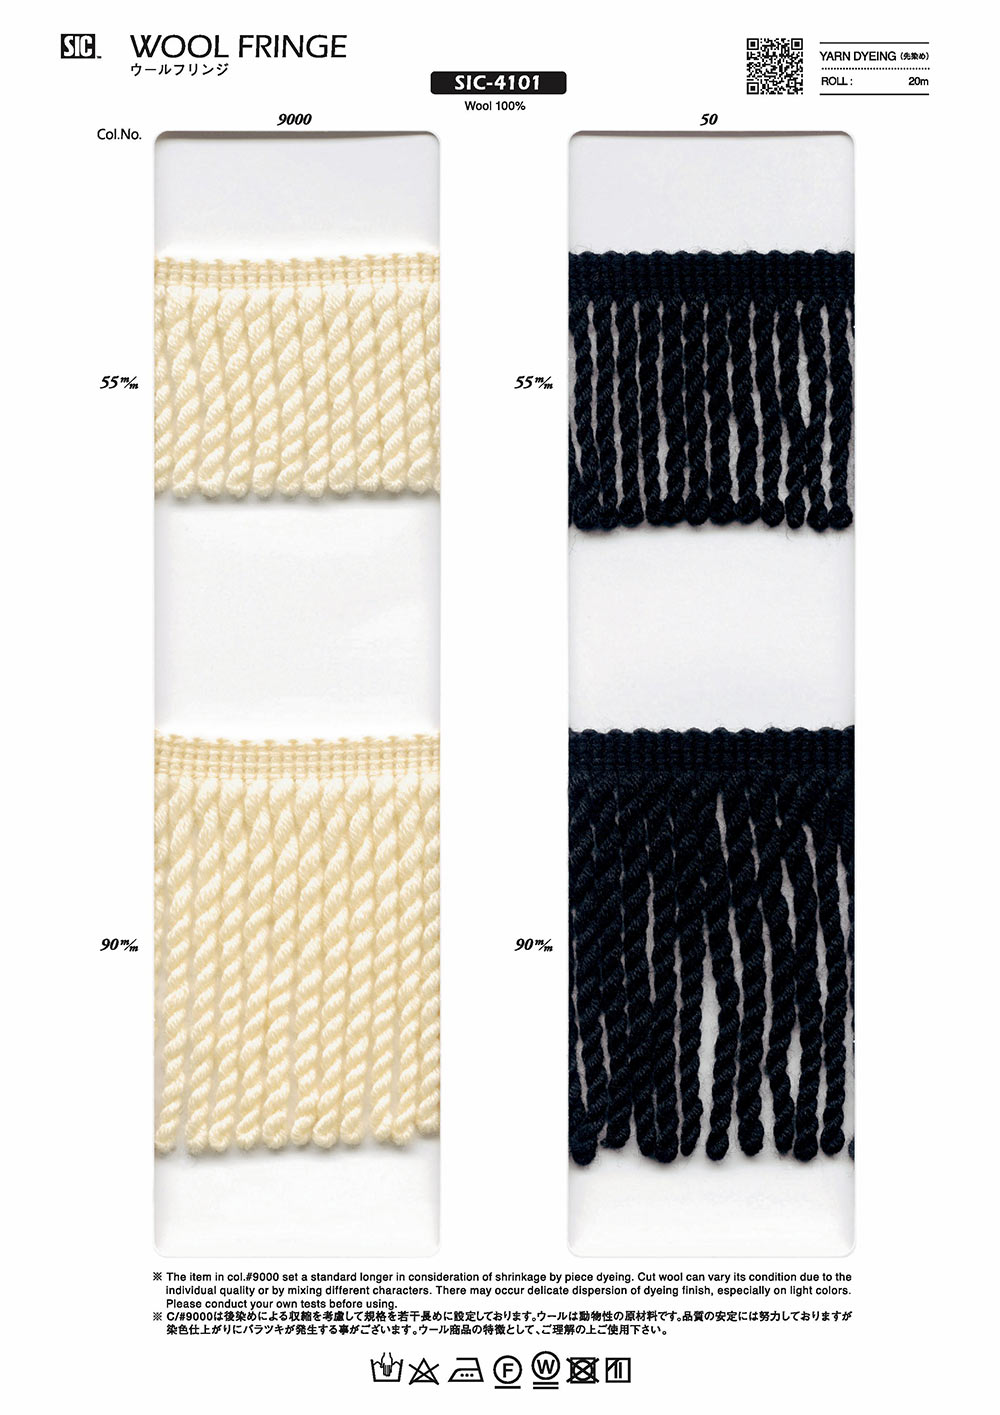 SIC-4101 Wool Fringe[Lace] SHINDO(SIC)